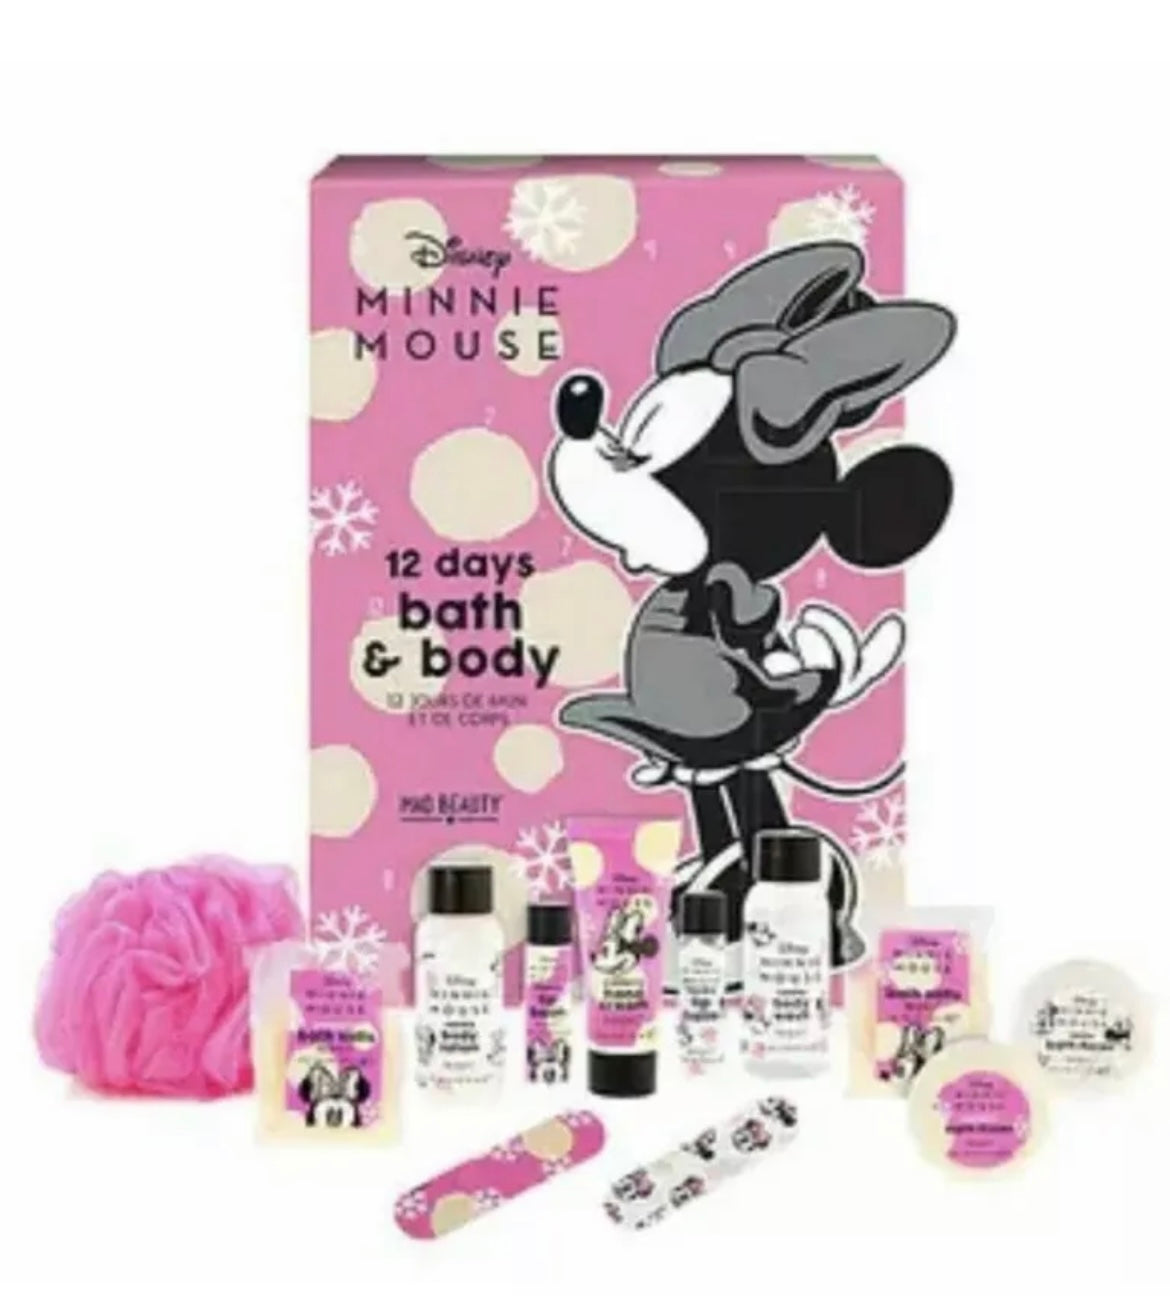 Minnie Mouse Mad Beauty Bath & Body Advent Calendar